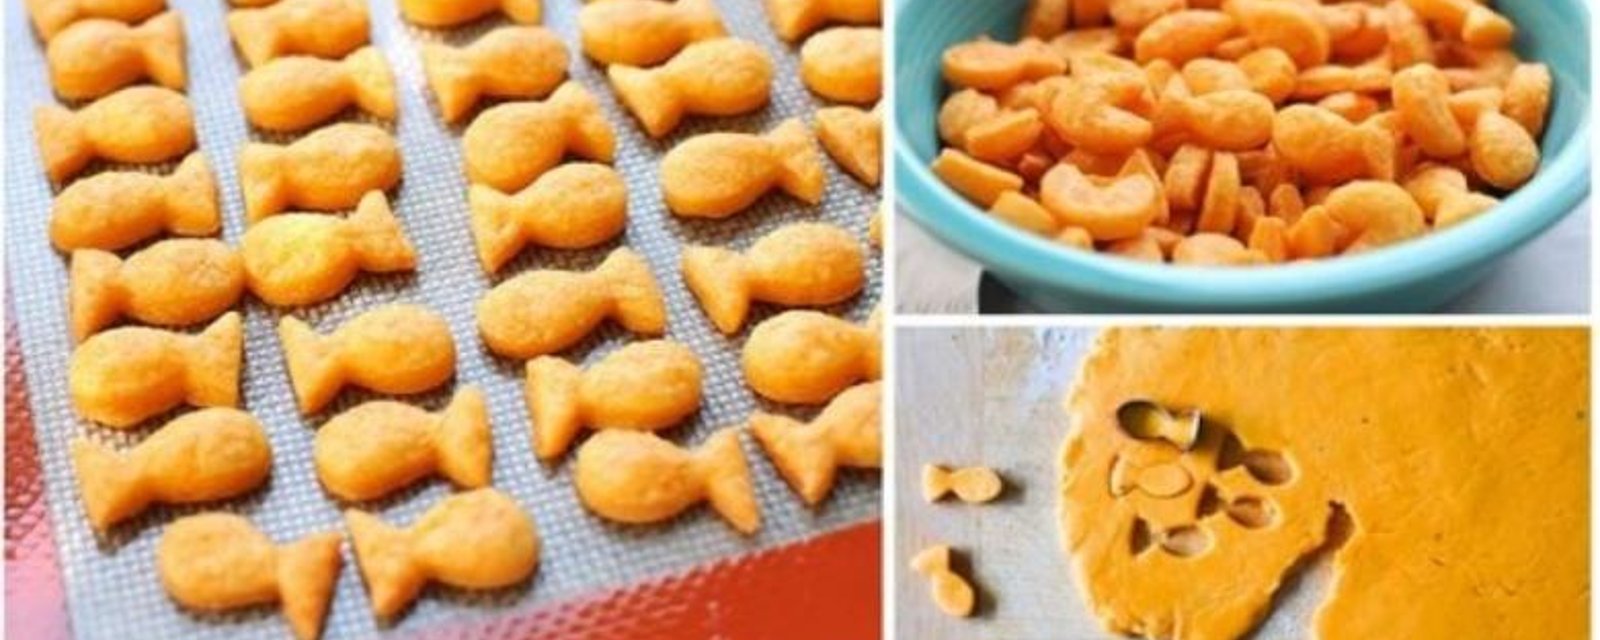 Apprenez à faire vos propres biscuits Goldfish...C'est tellement facile!